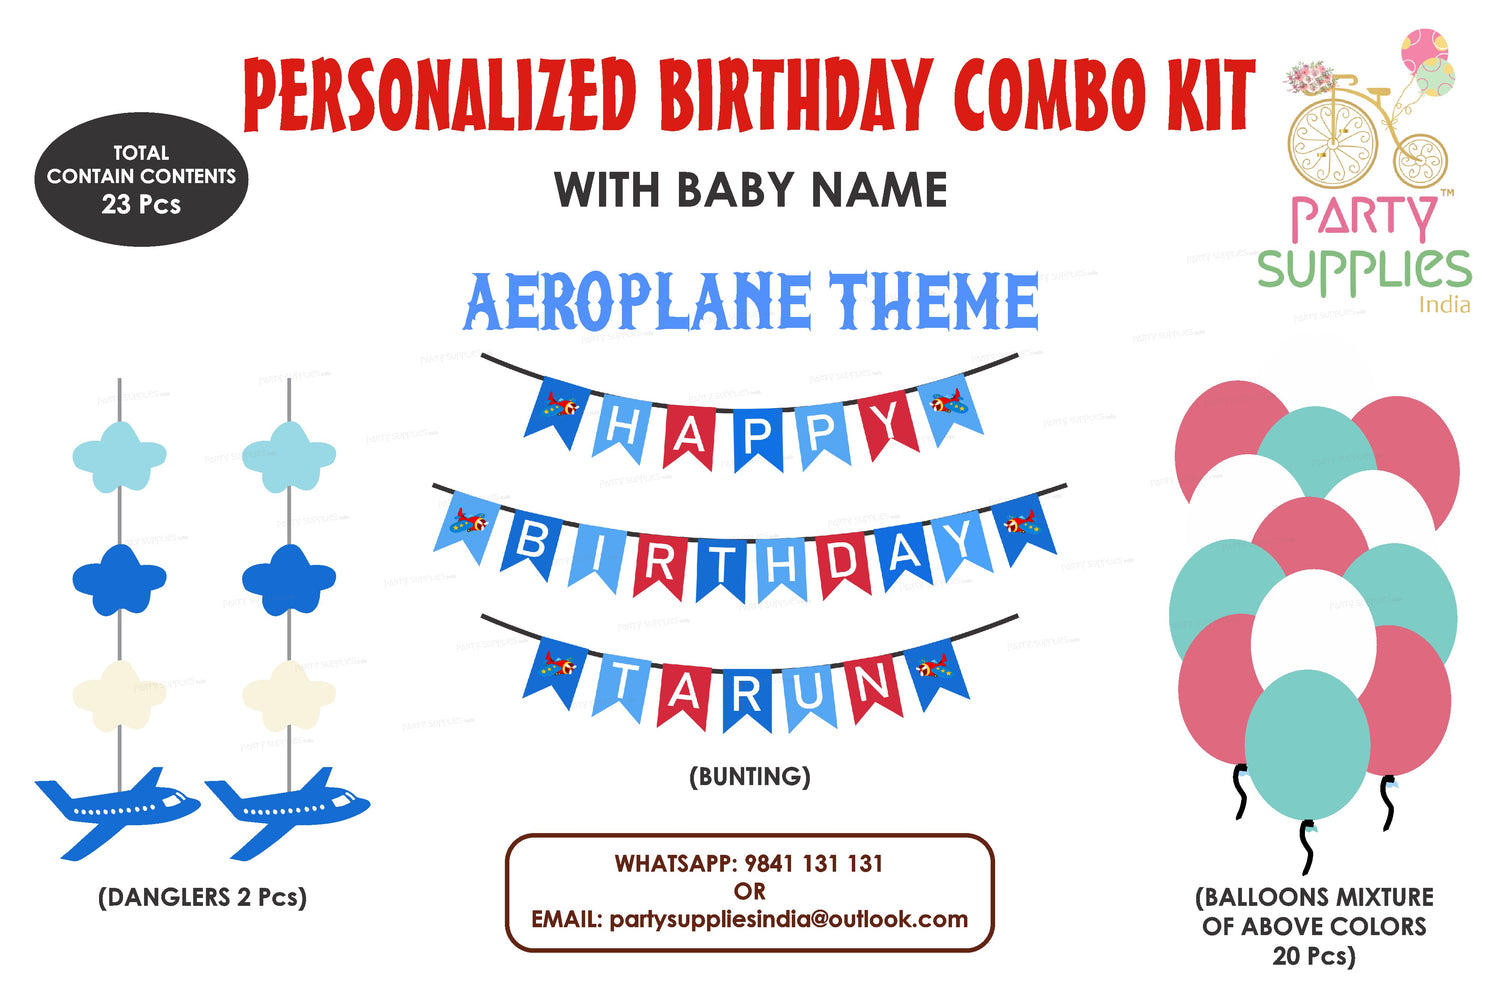 PSI Aeroplane Theme Basic Kit